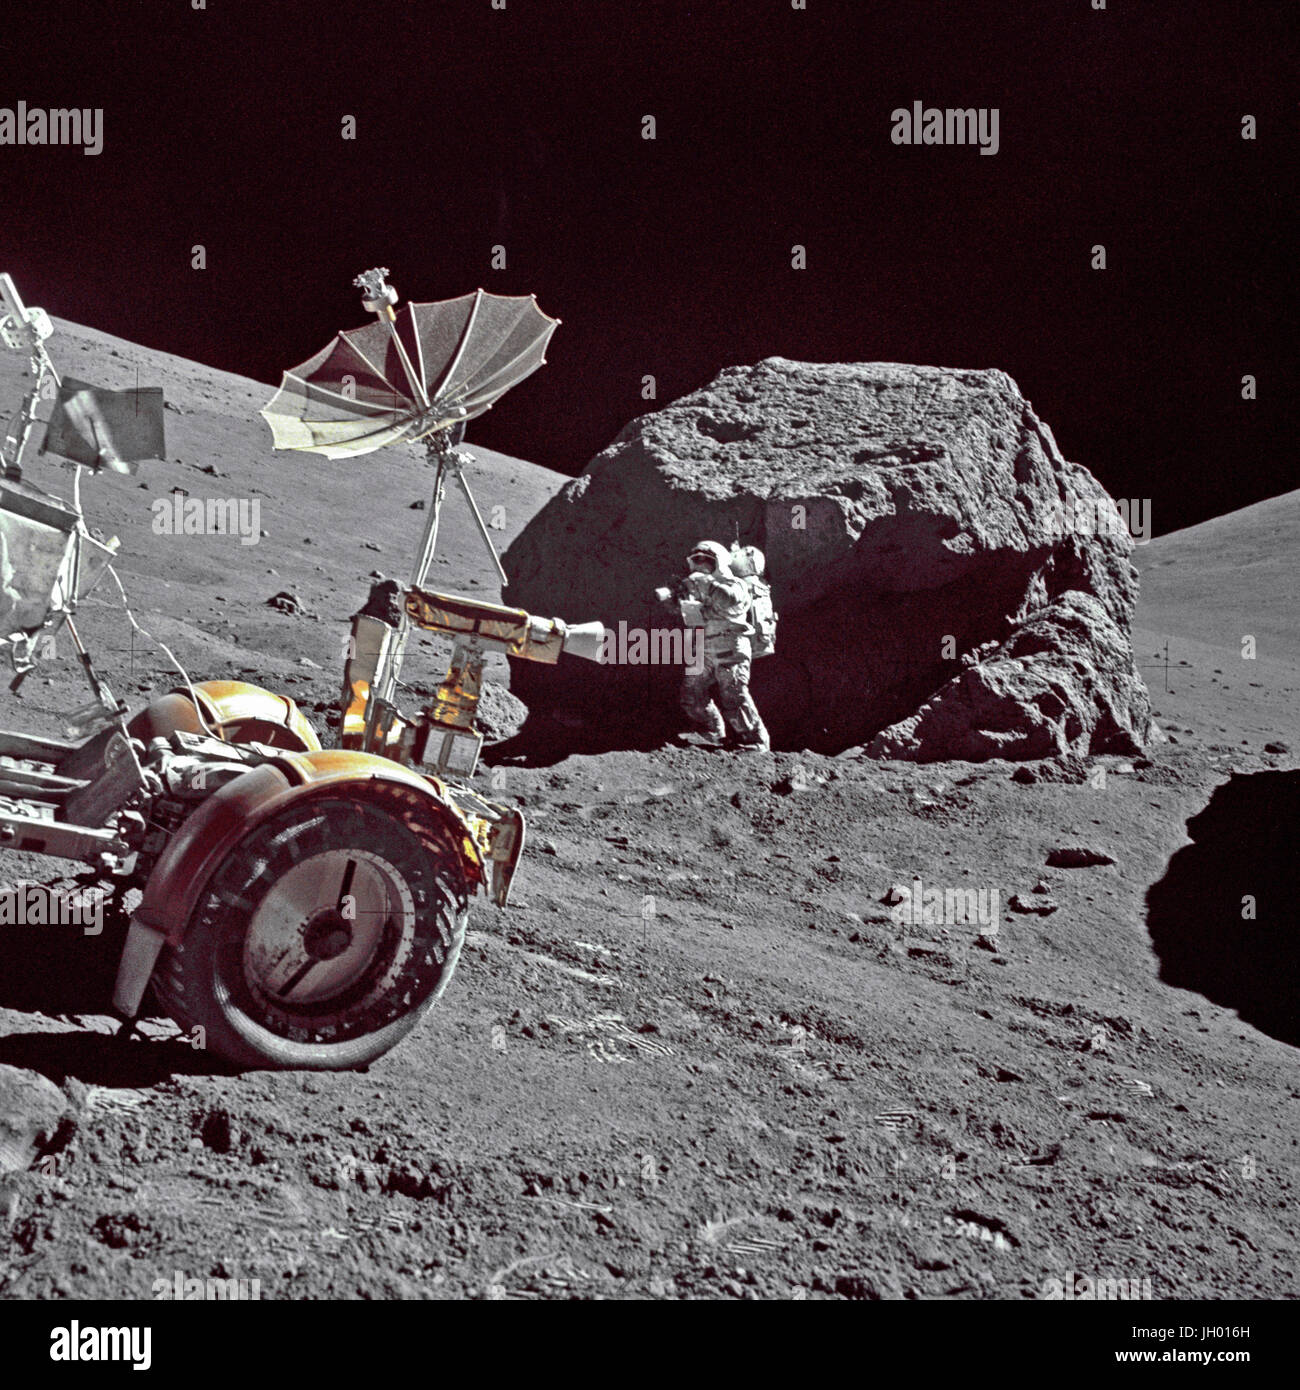 Geologe-Astronaut Harrison H. Schmitt wird neben eine riesige, Split Boulder auf Station 6 auf die schräge Basis des Nord-Massivs während der dritten Apollo 17 Extravehicular Activity (EVA-3) am Landeplatz Taurus-Littrow fotografiert. Die "Rover" Lunar Roving Vehicle (LRV) ist im Vordergrund links. Schmitt ist der Pilot der Mondlandefähre von Apollo 17. Fotograf: NASA / Eugene A. Cernan Stockfoto